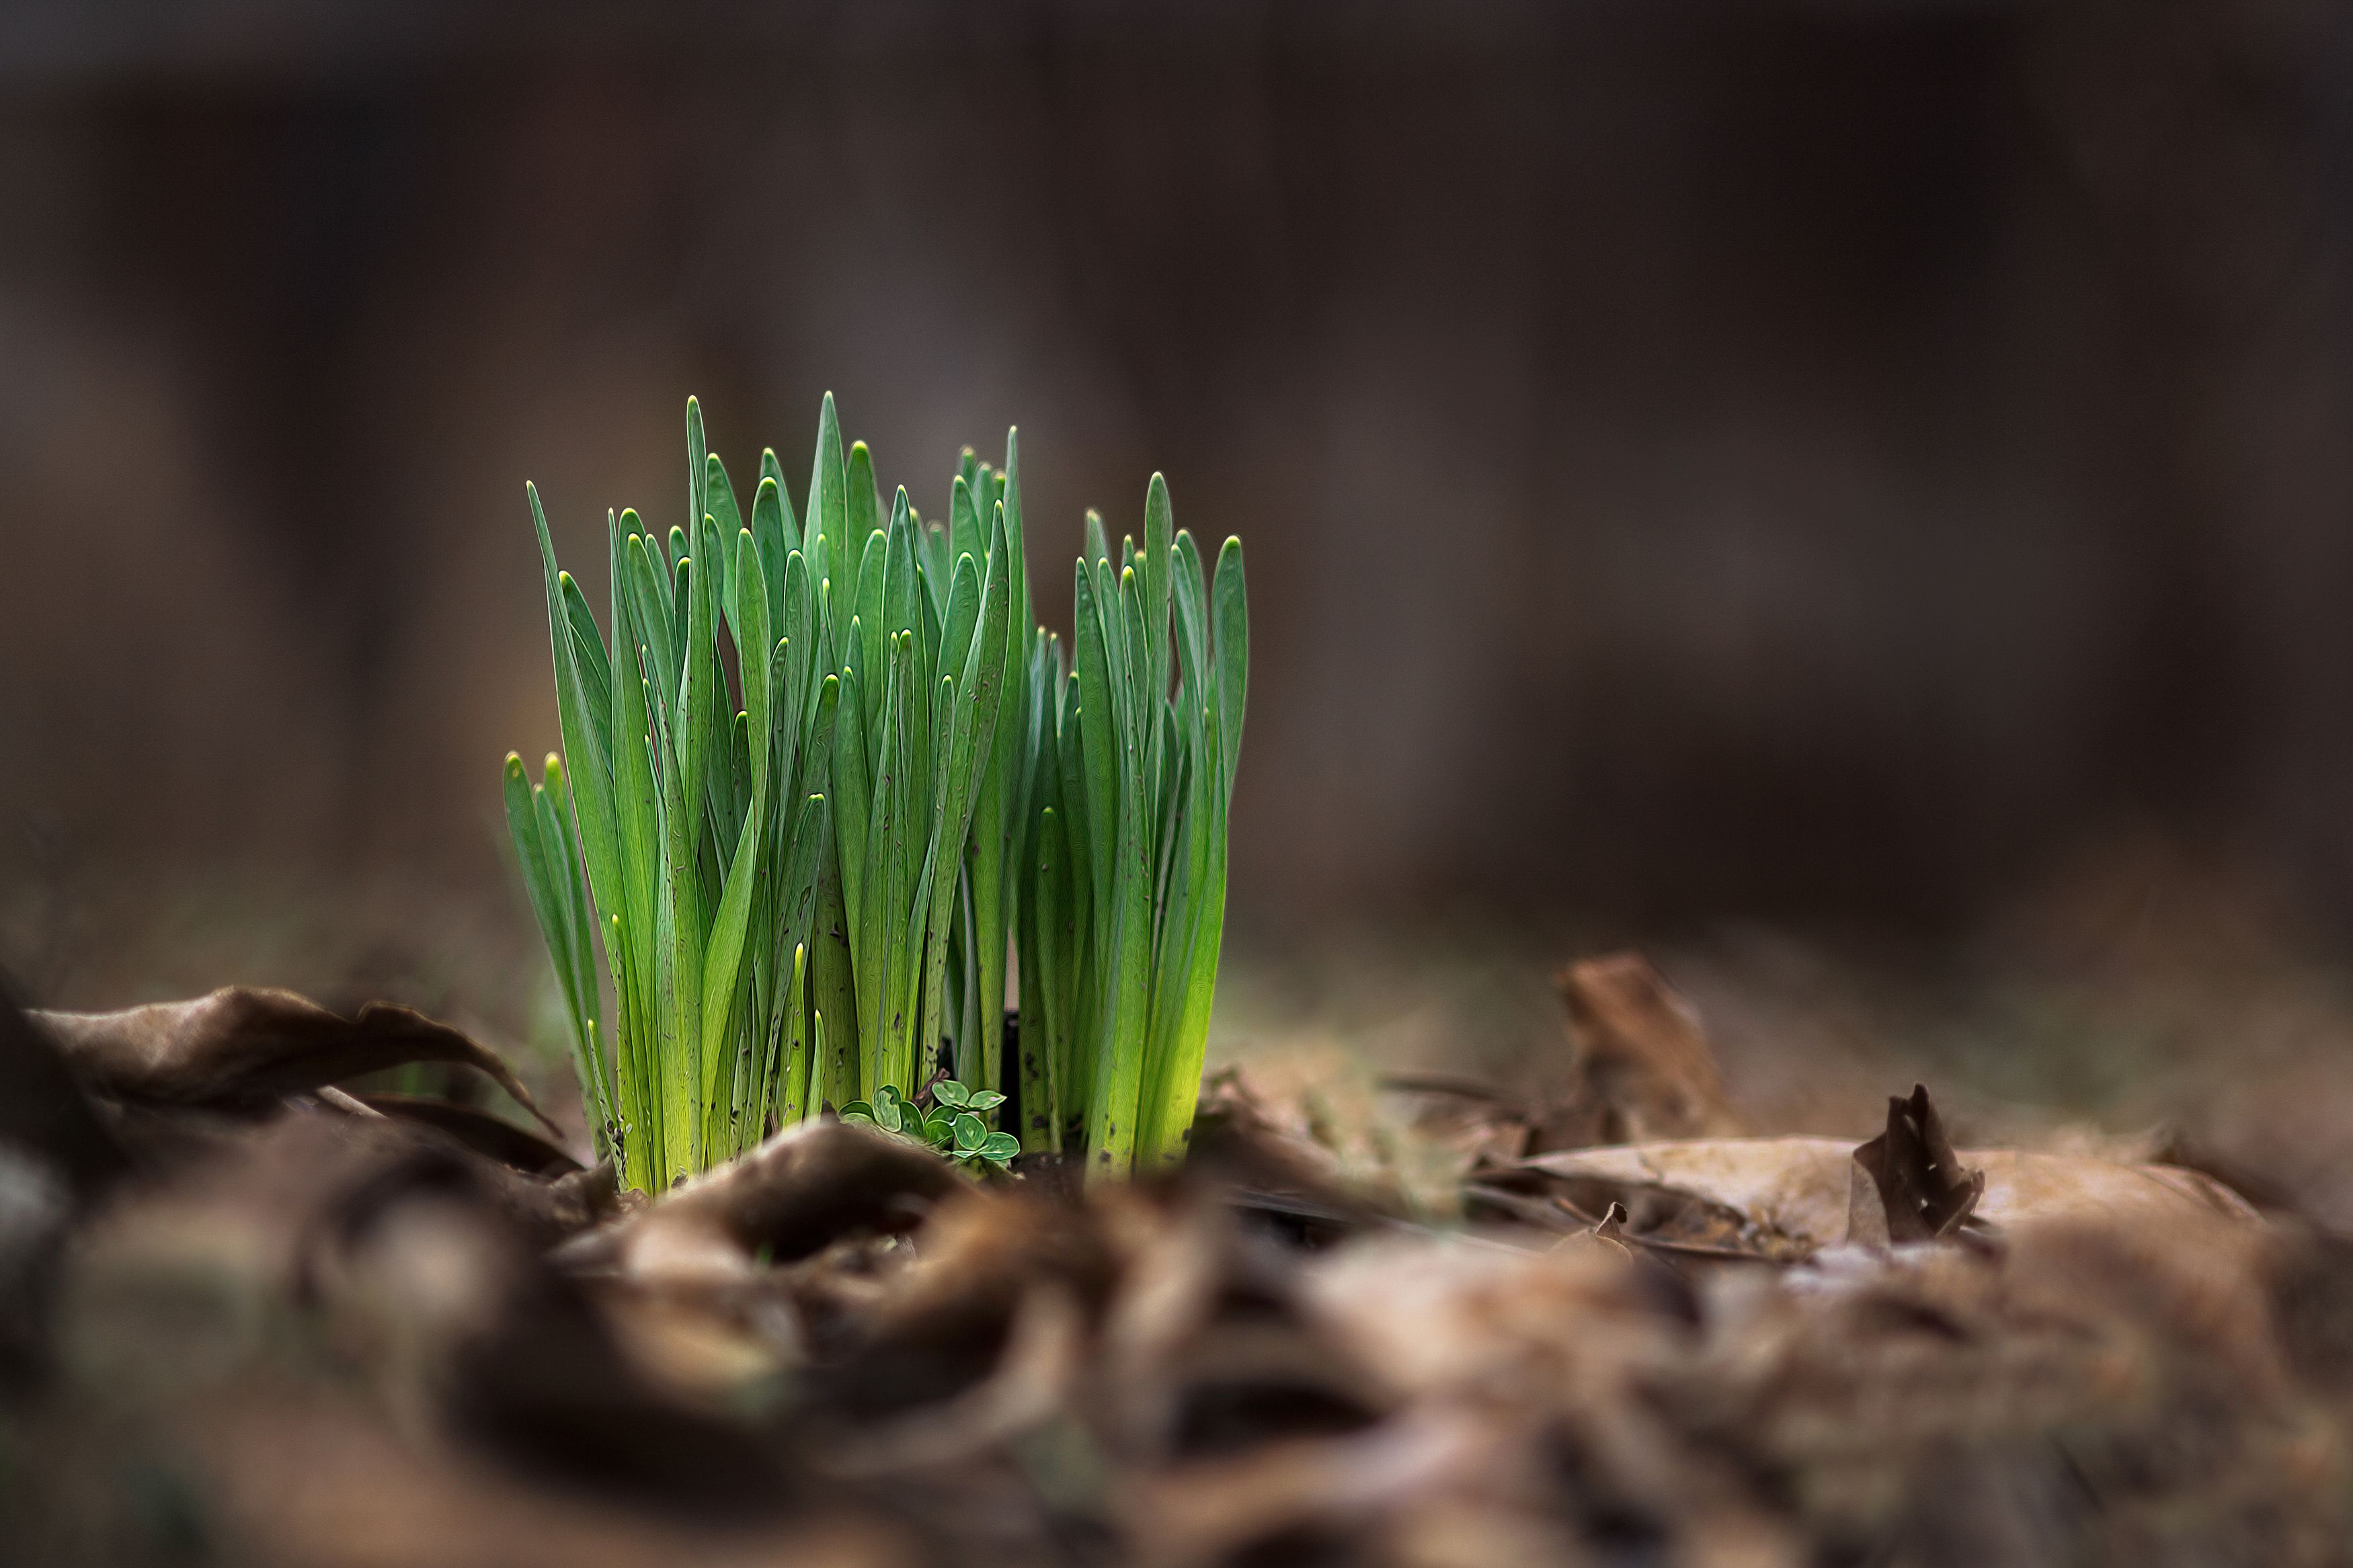 весна март природа вечер свет цвет трава листва фотография, Еремеев Дмитрий